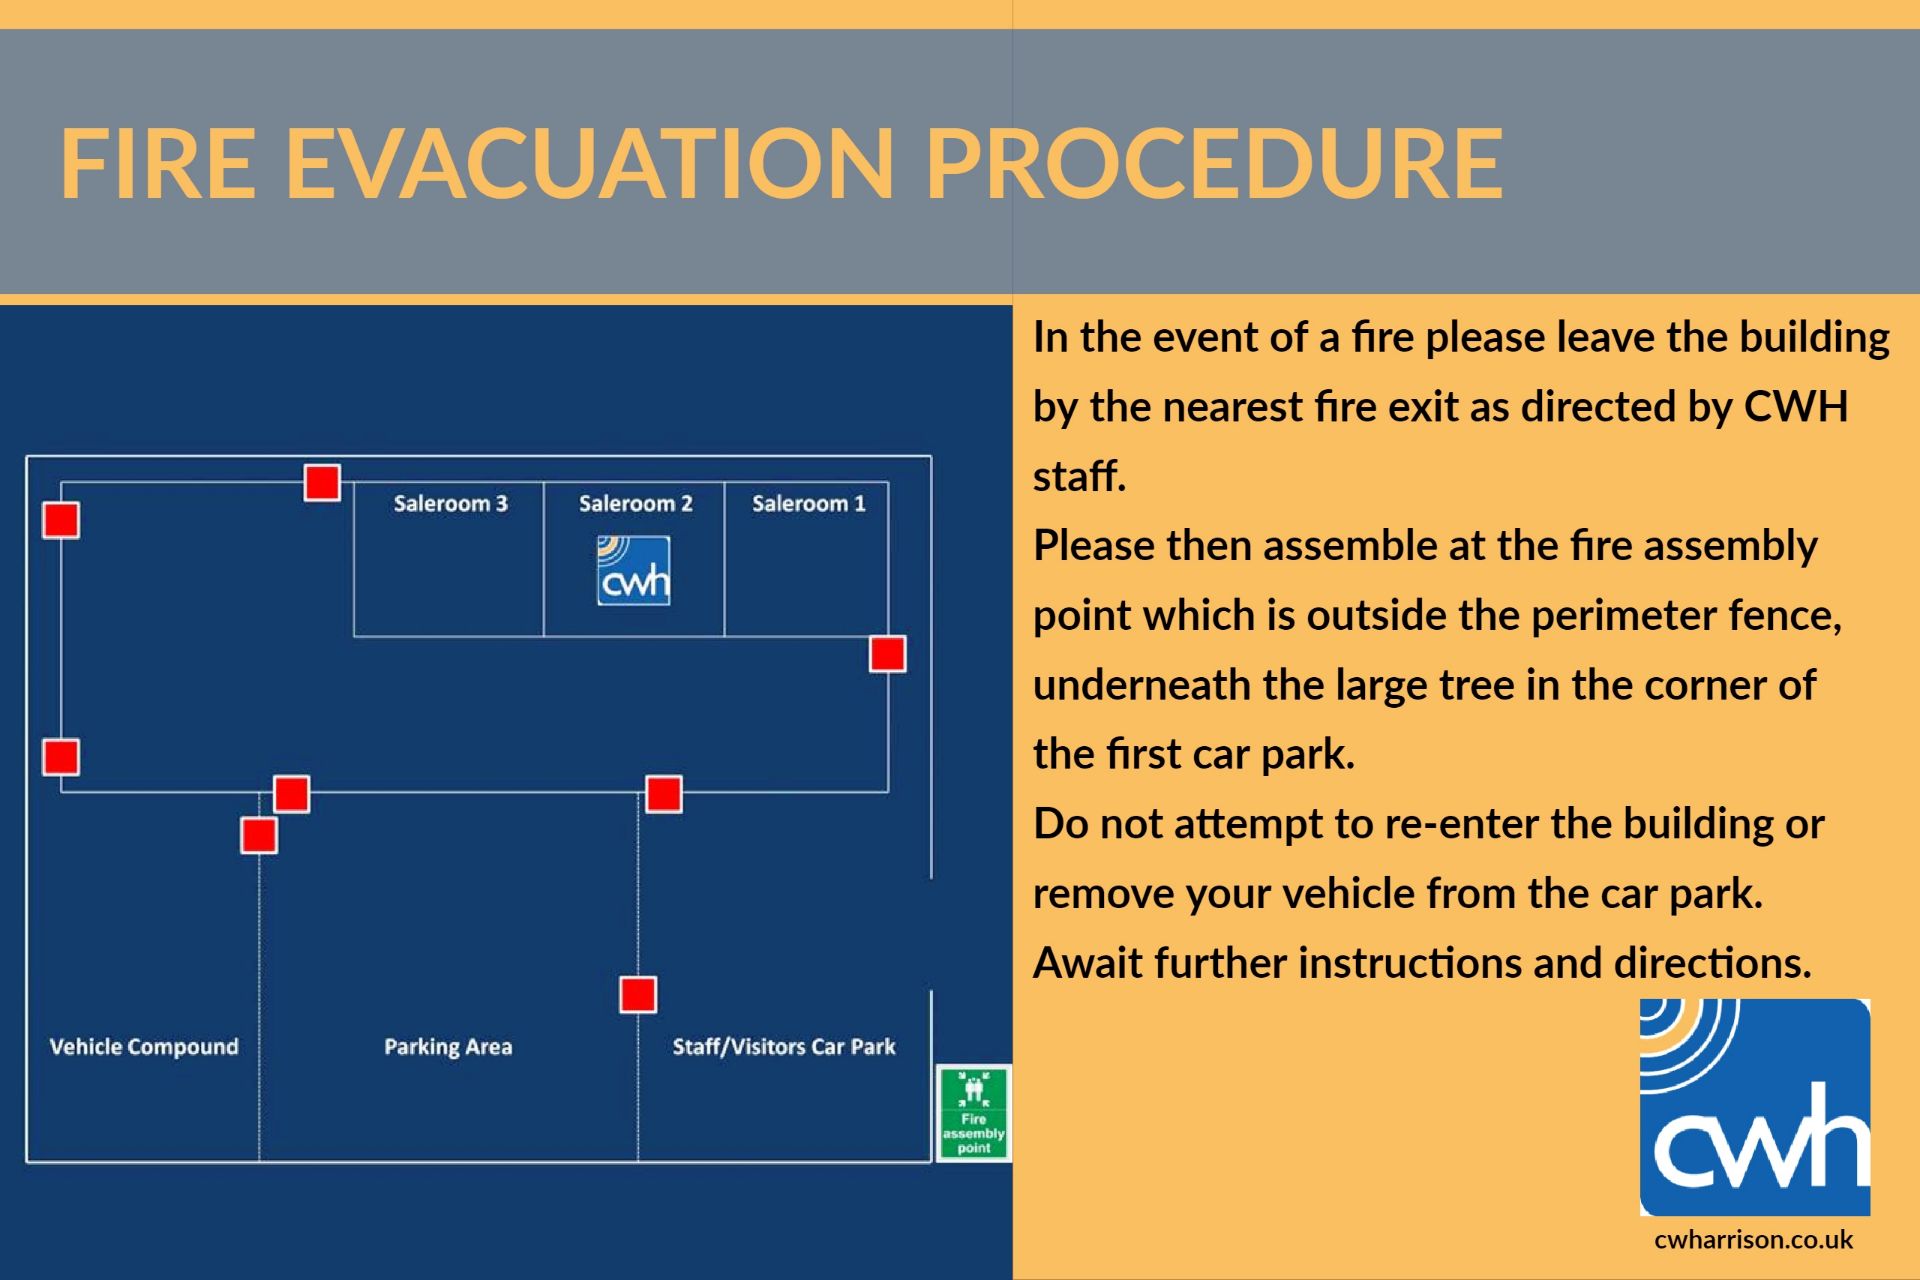 Fire Evacuation Procedure